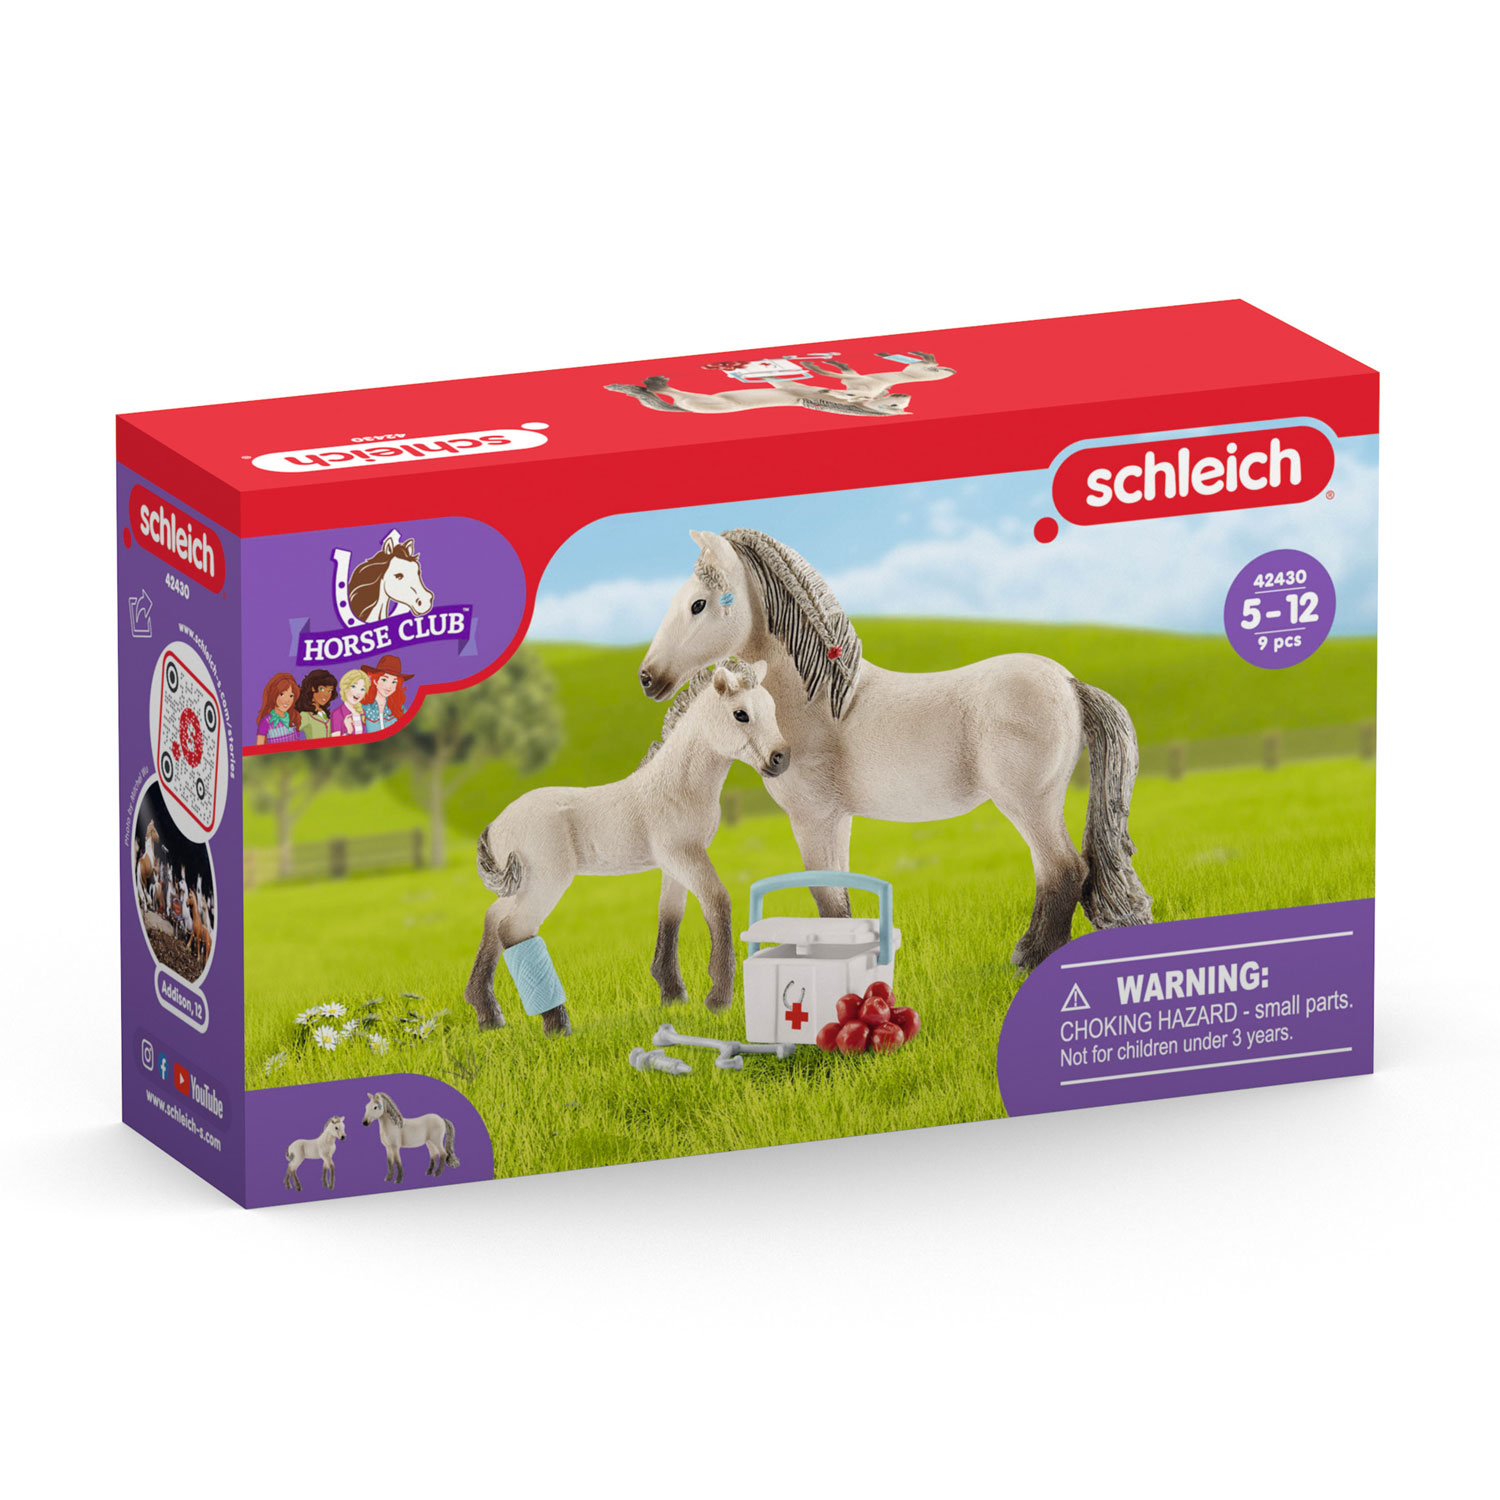 Schleich First aid kit & Icelandic horse